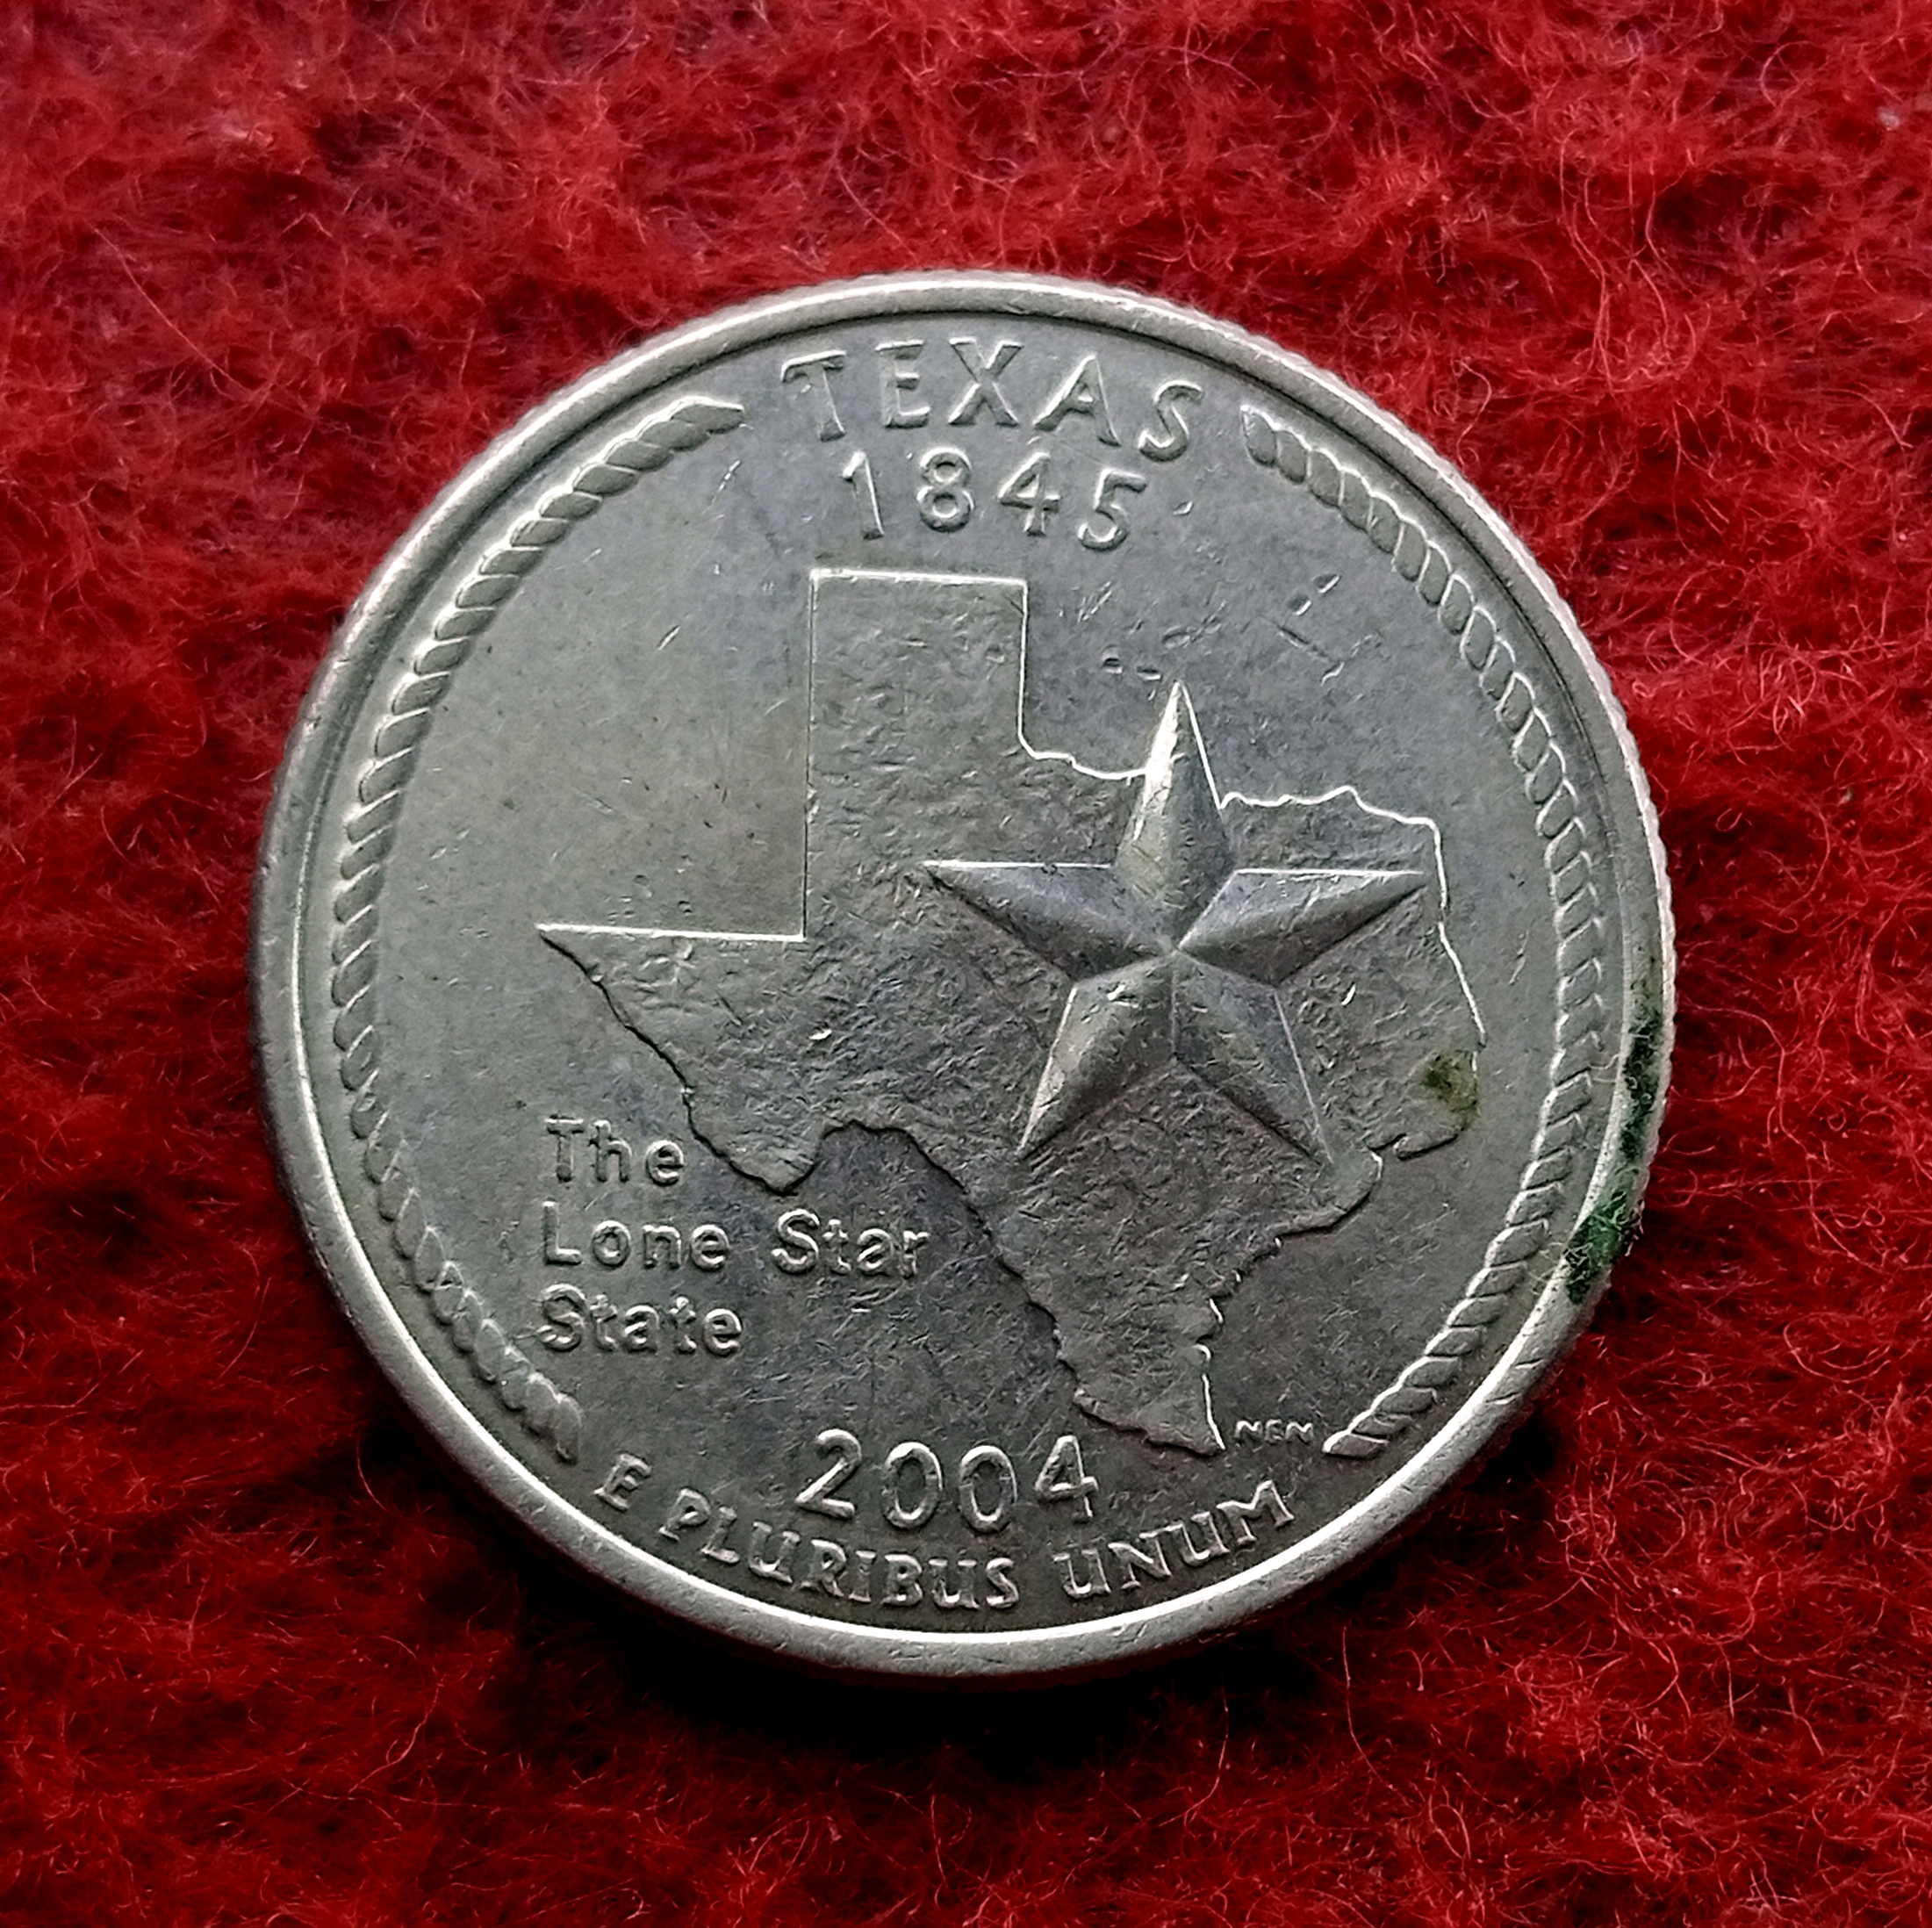 2004 quarter